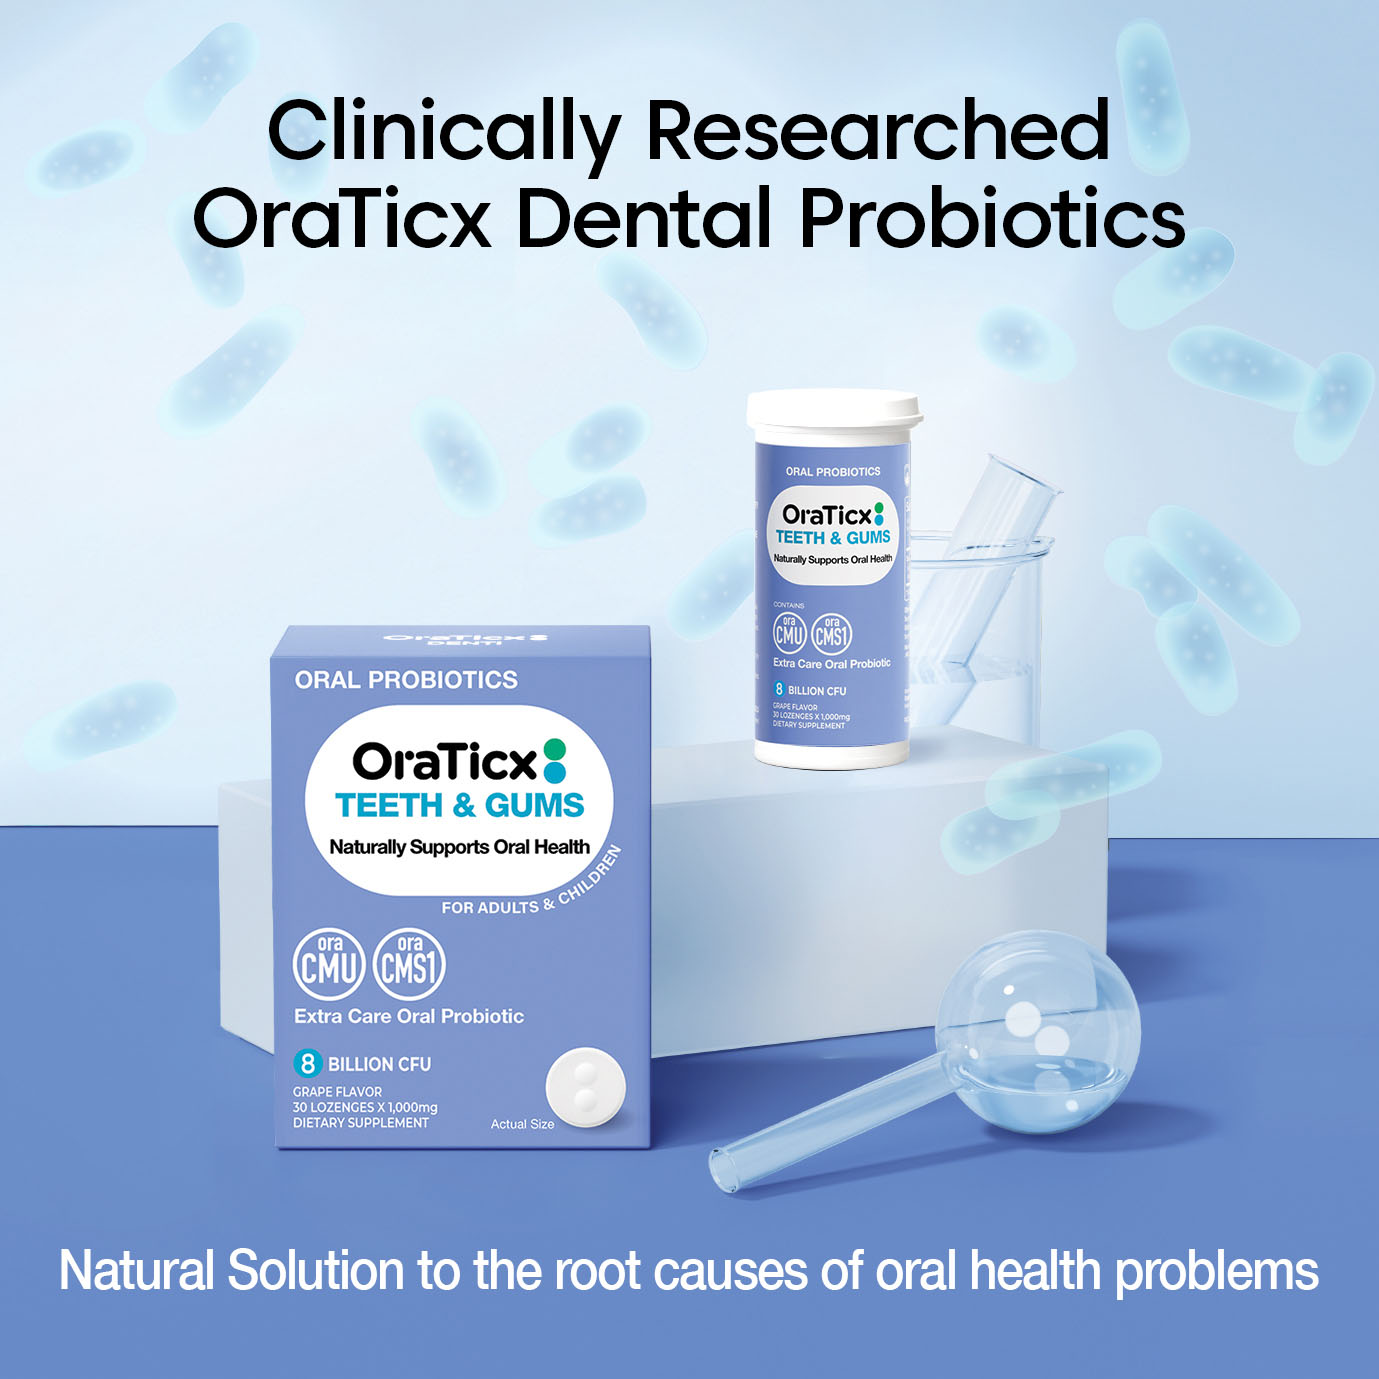 OraTicx Oral Probiotics - Clinically researched oraticx dental probiotics